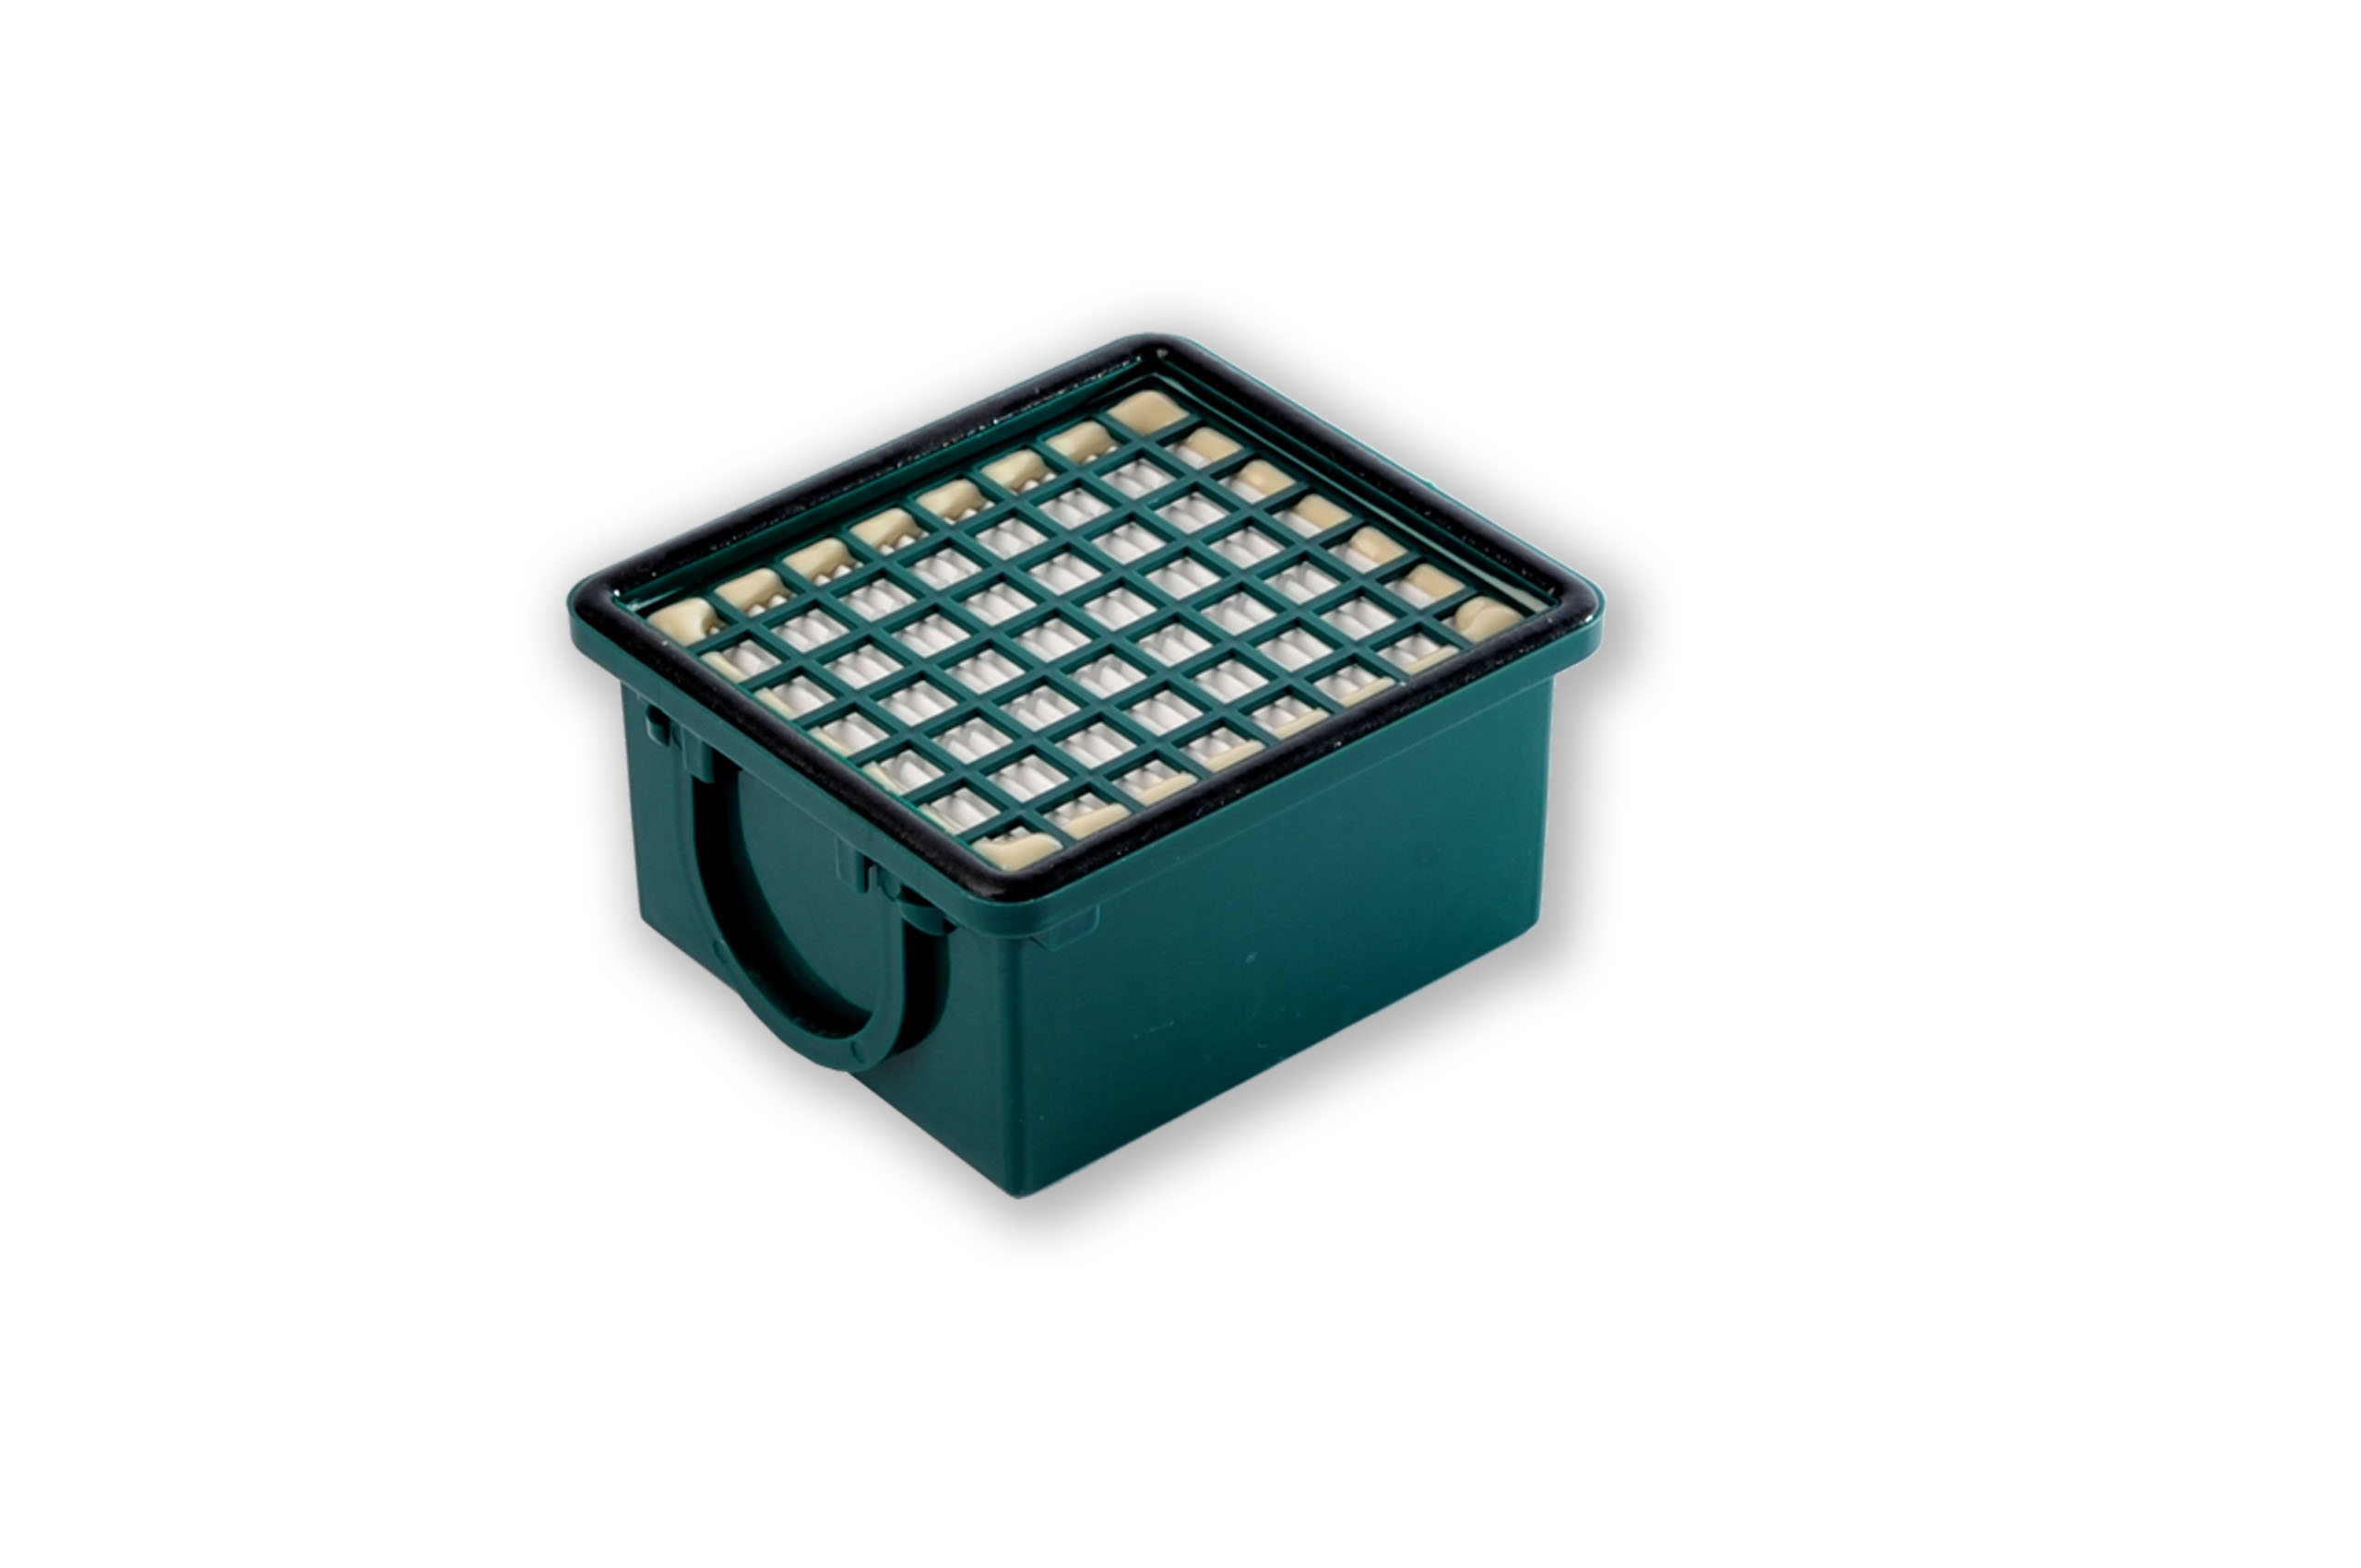 Filterset kompatibel mit Vorwerk Kobold VK 130, VK 131, SC: 20 Staubsaugerbeutel ähnlich FP 130, FP 131 , Staubbeutel + 1 Hygiene-Mikrofilter HEPA + 1 Aktivkohlefilter